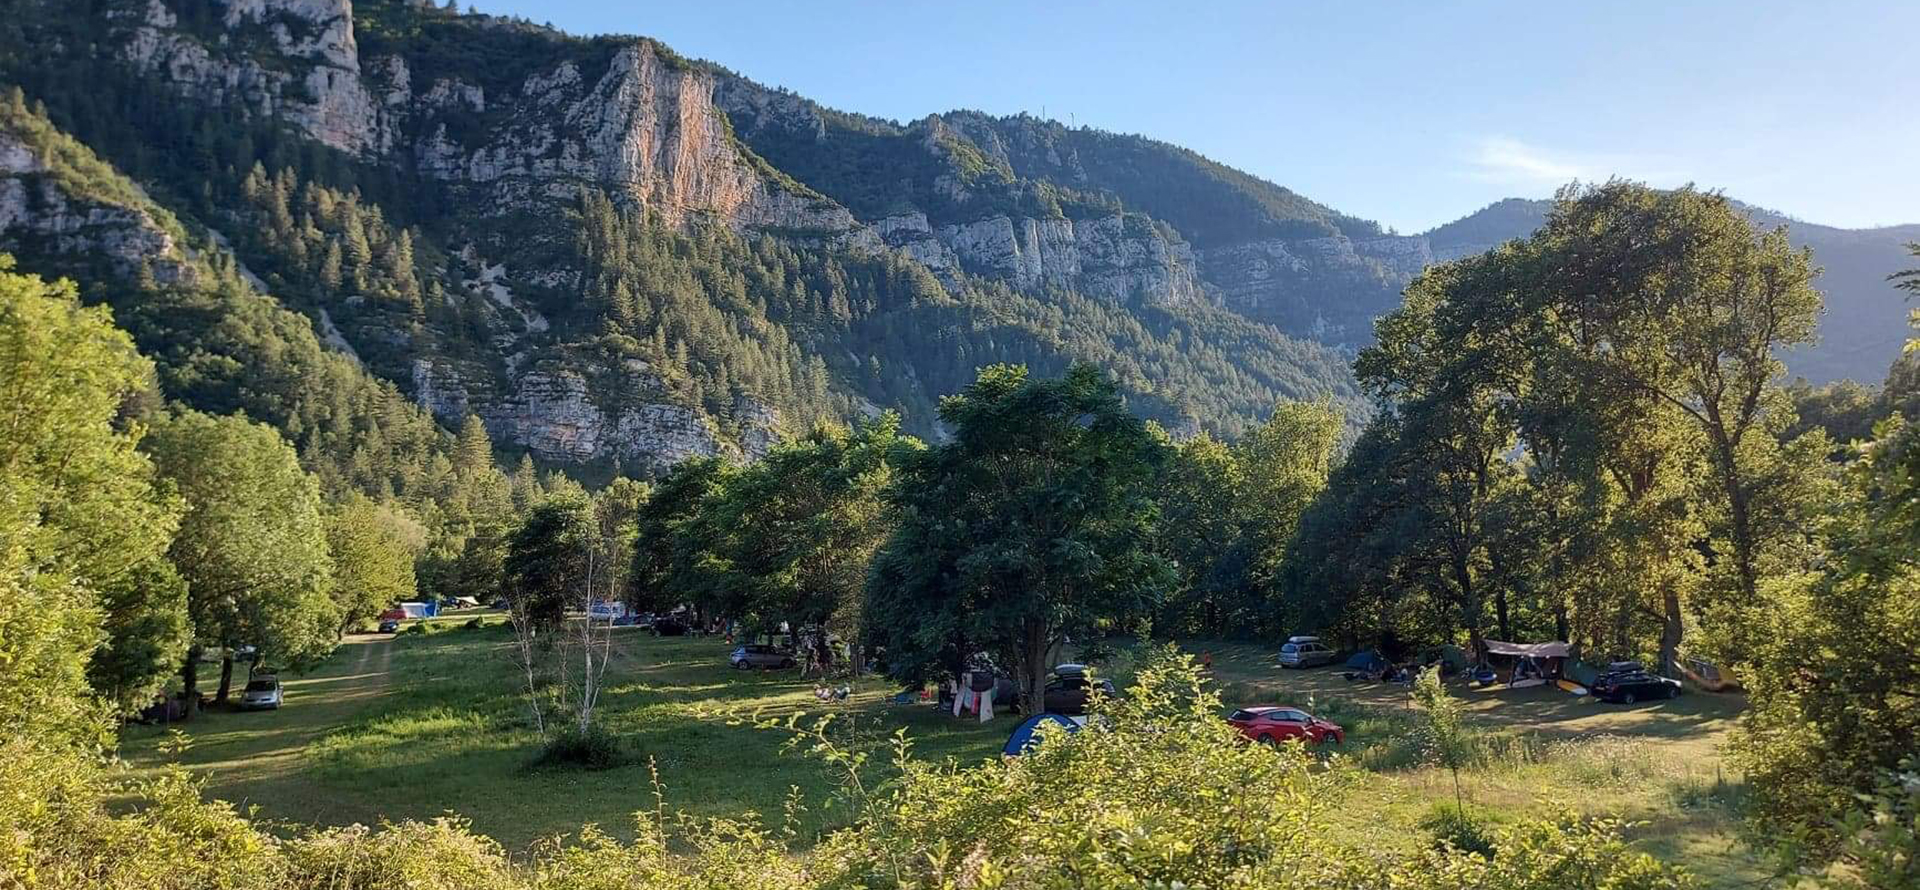 Aire naturelle Gorges du Tarn, camping Charbonnières : location vacances Lozère